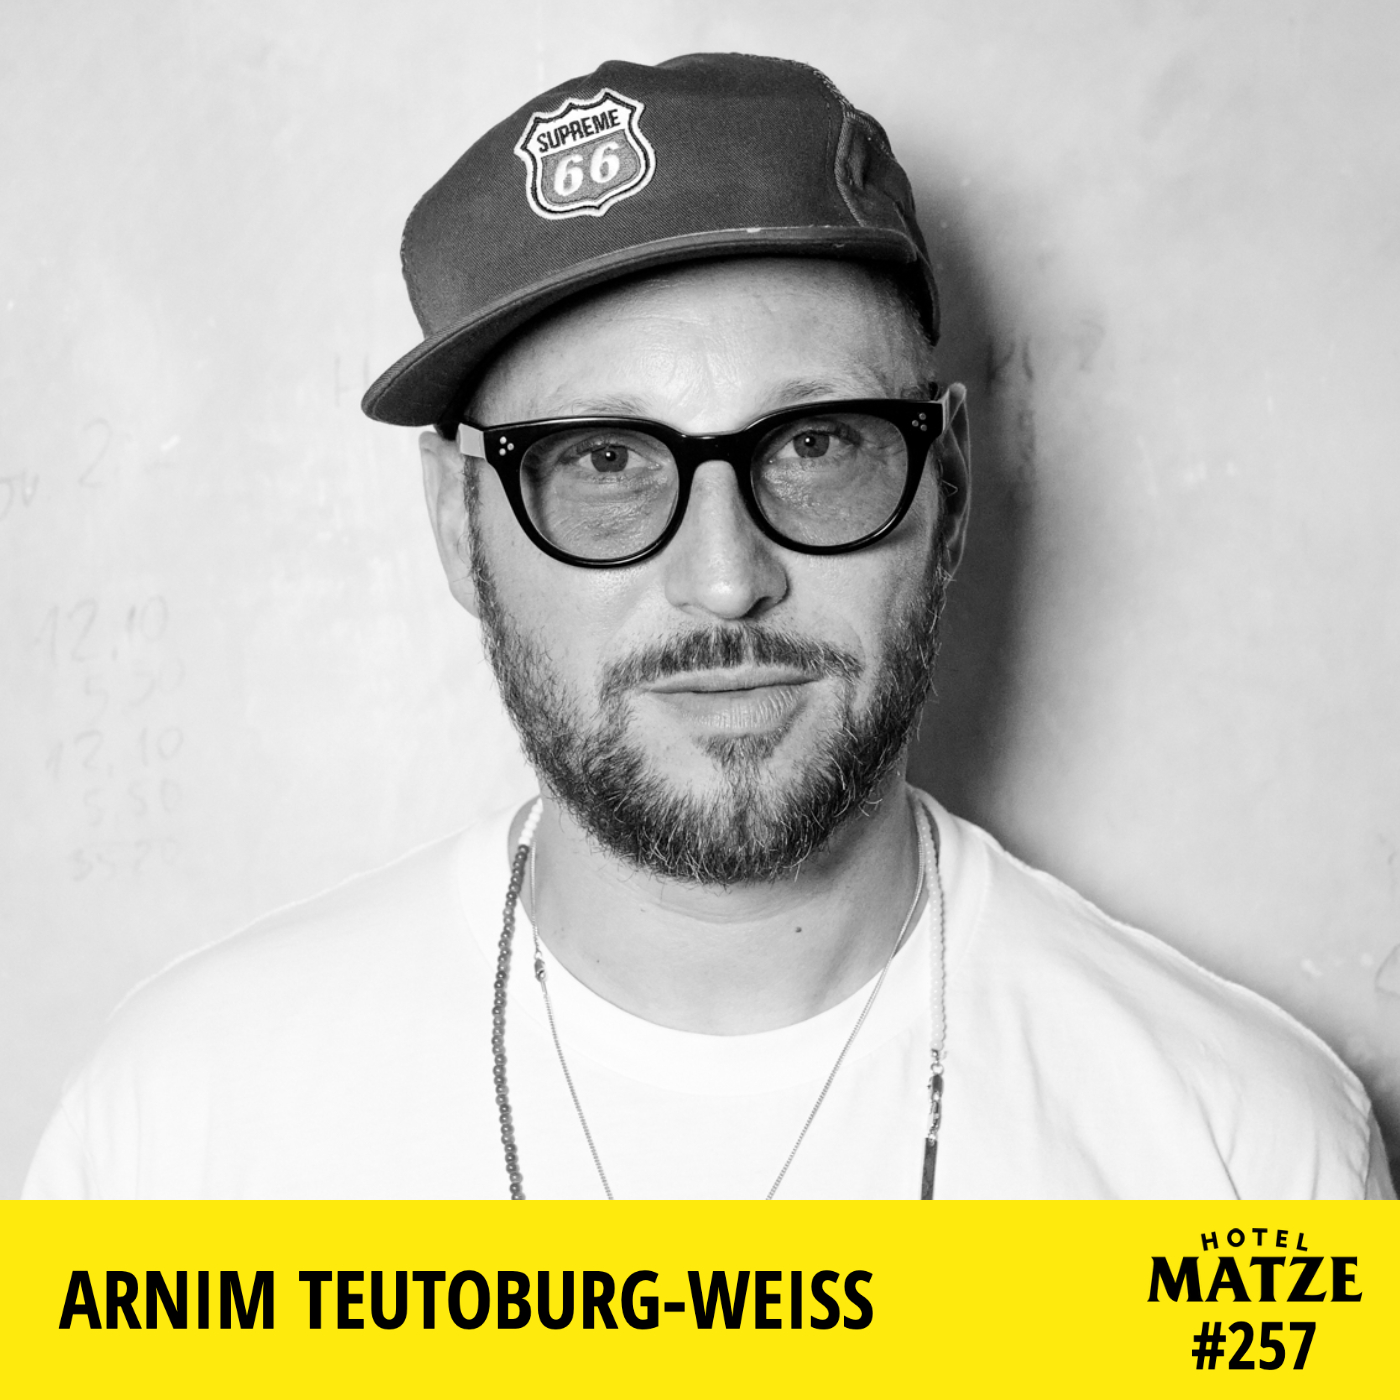 Arnim Teutoburg-Weiß (Beatsteaks) – Wie habt ihr eure Krise überwunden?